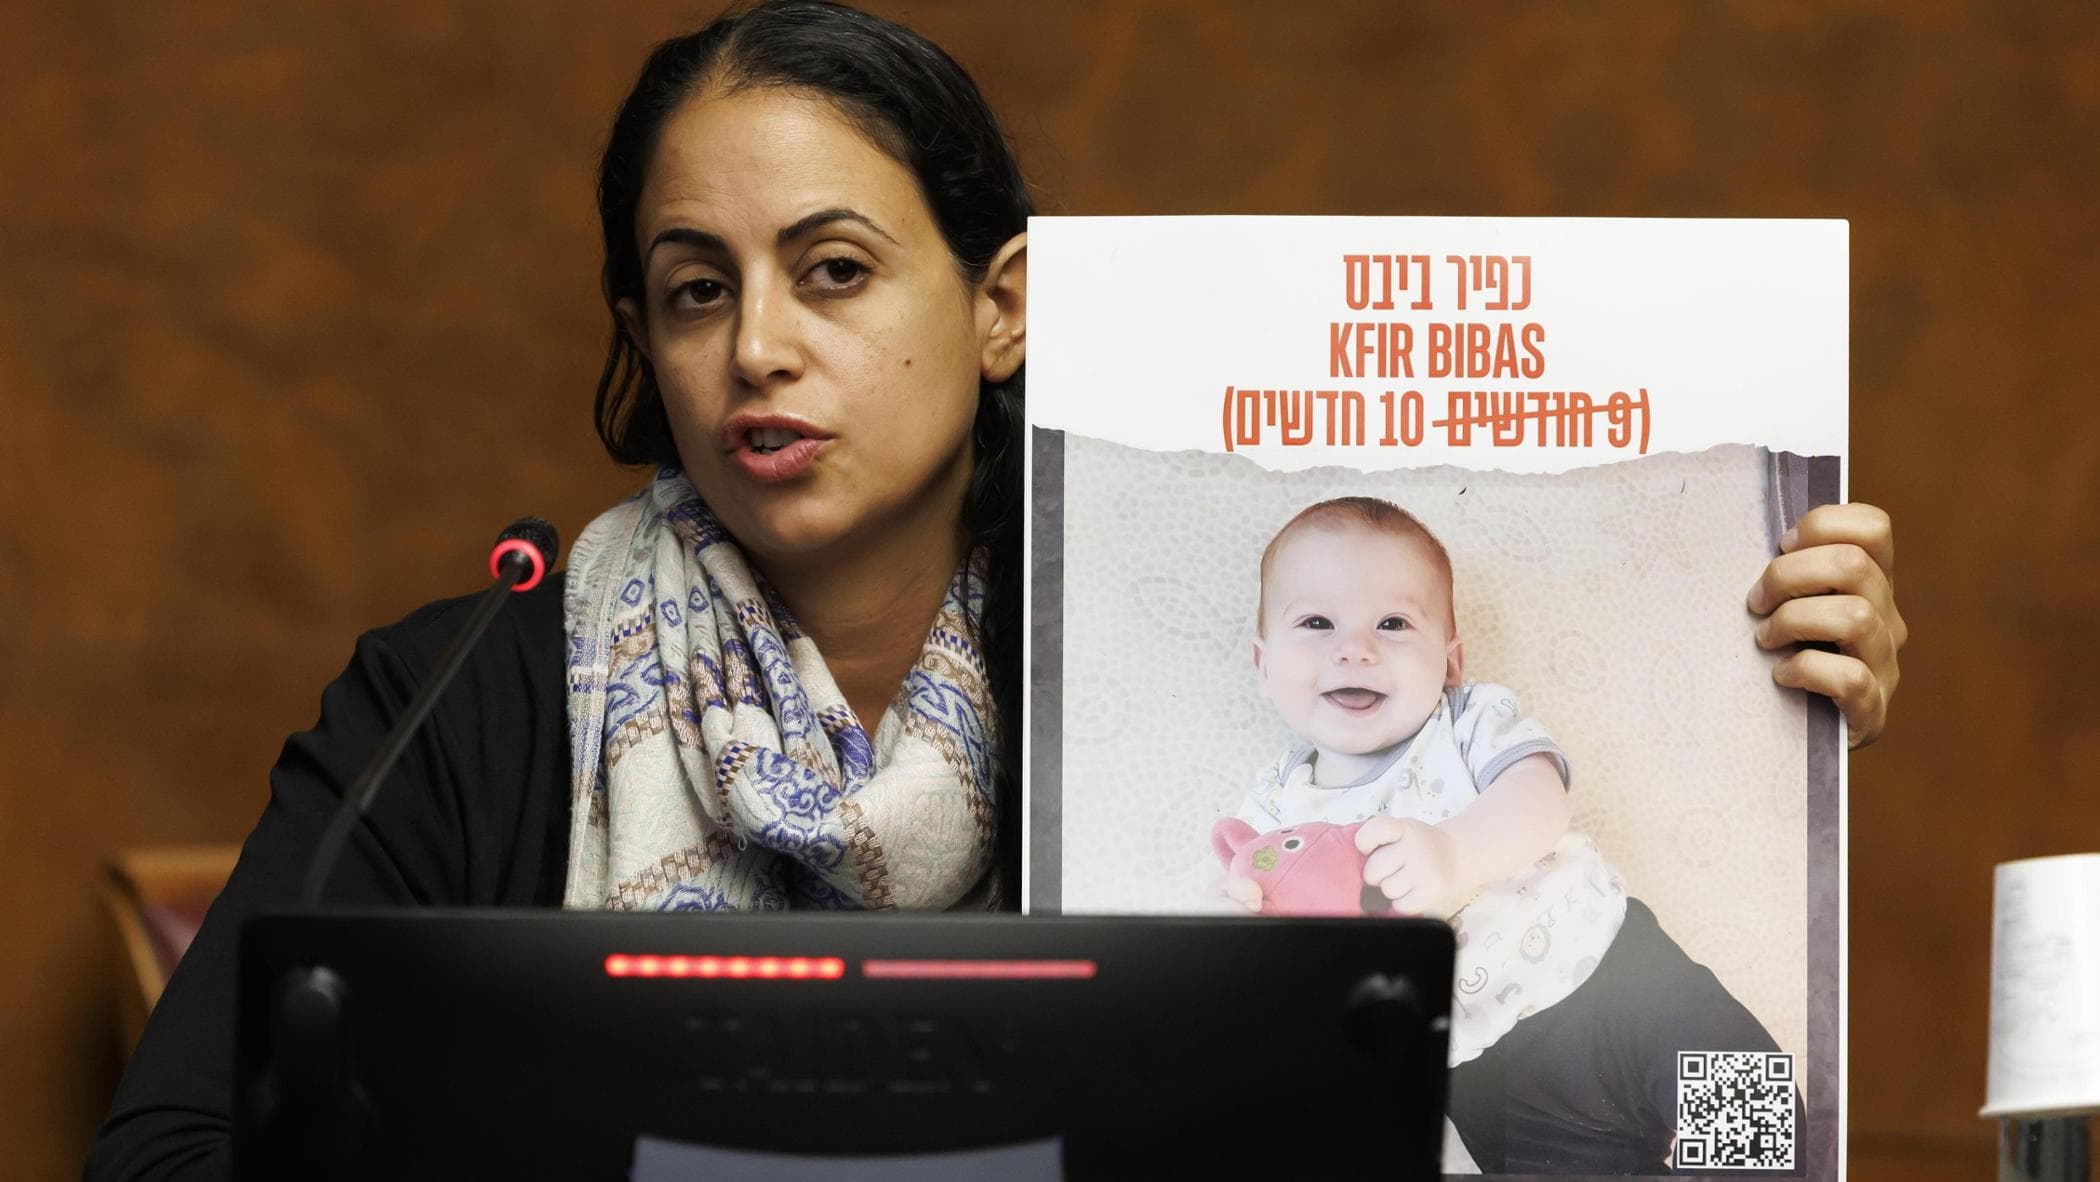 Hamas annuncia la morte di Kfir, il più piccolo degli ostaggi, del fratellino Ariel e della madre